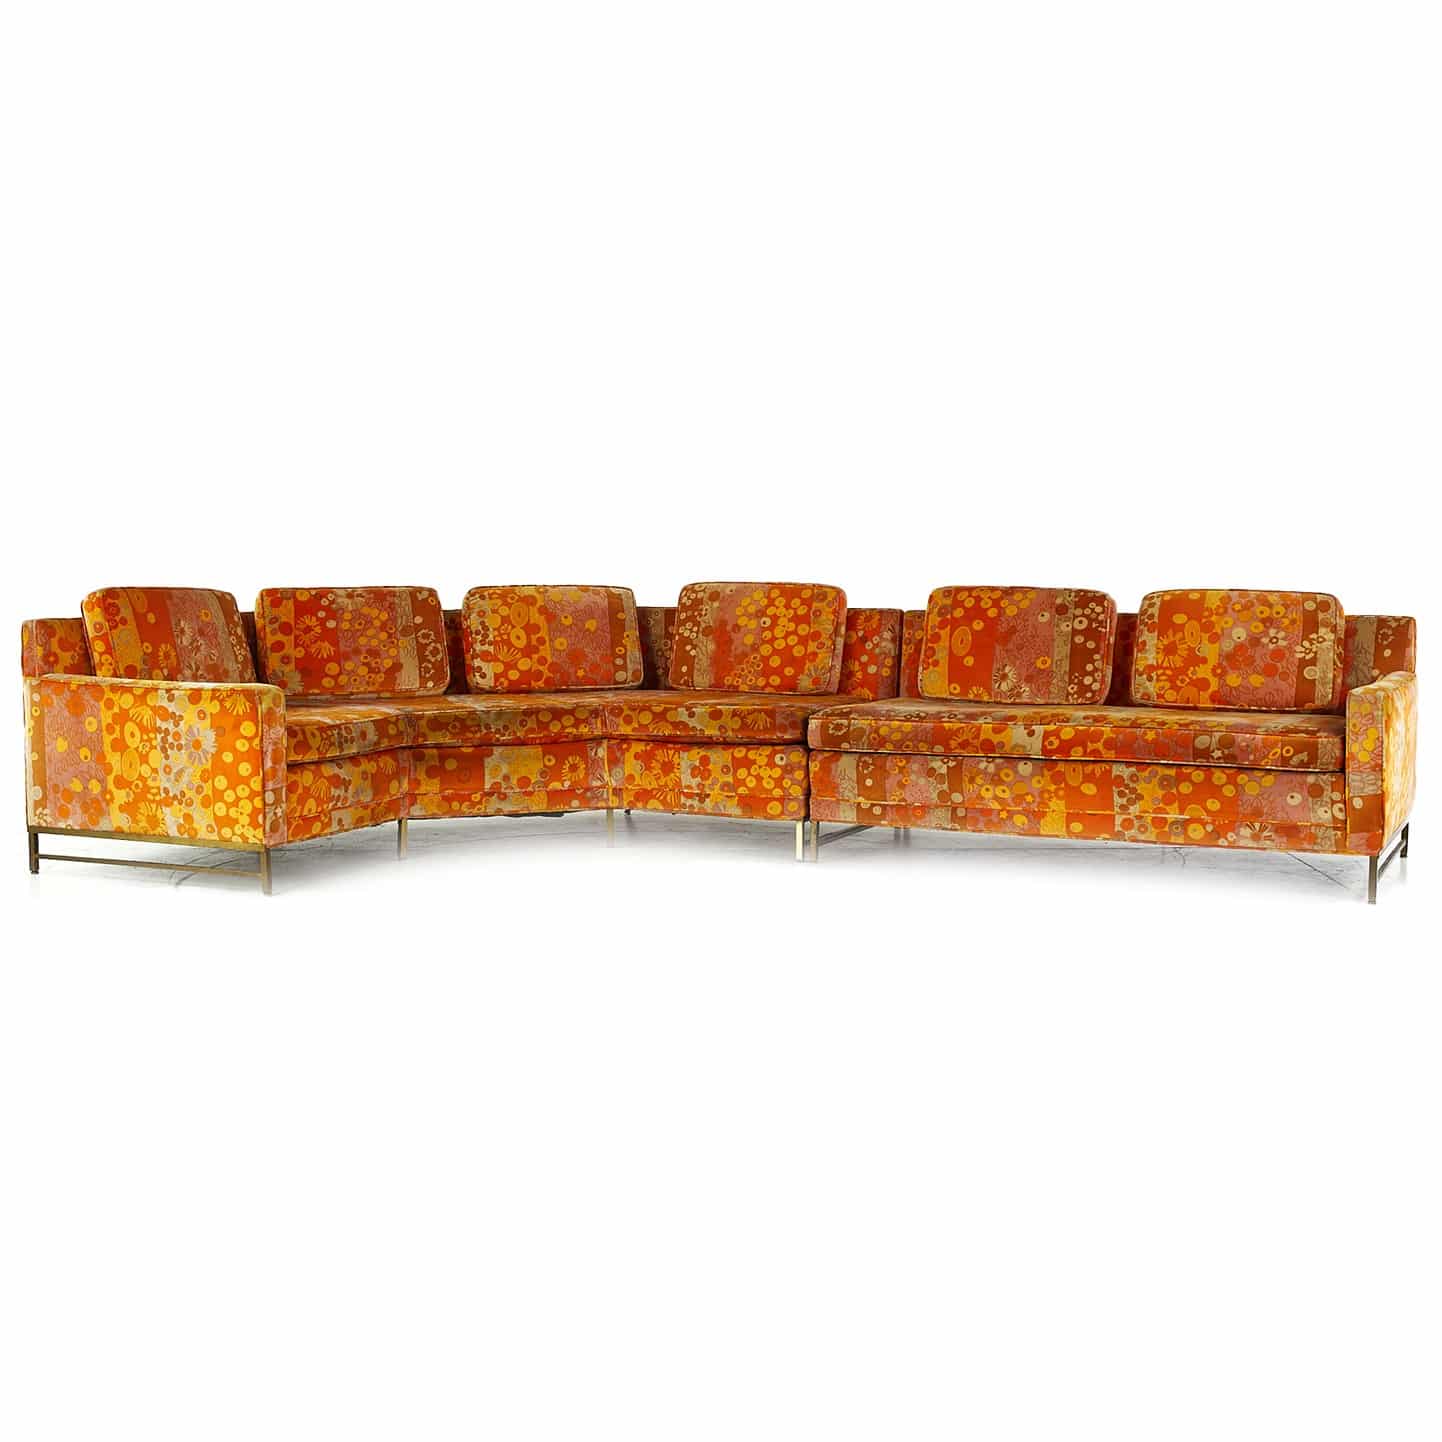 Paul Mccobb for Directional Mid Century Sectional Sofa with Jack Lenor Larsen Primavera Velvet Fabric